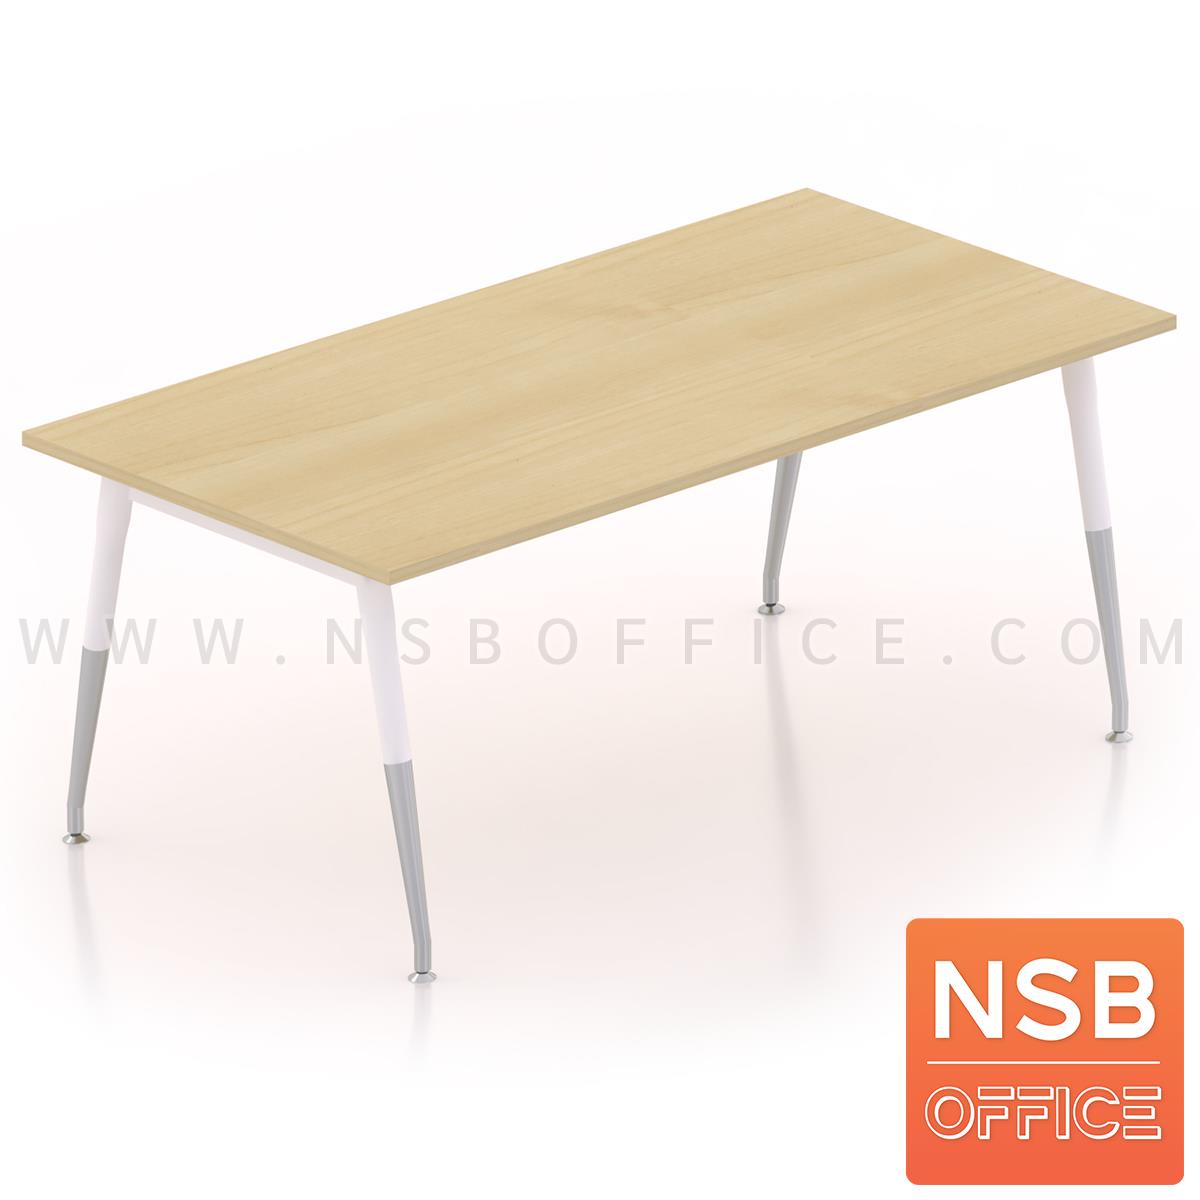 A05A076:โต๊ะประชุมทรงสี่เหลี่ยม  ขนาด 150W, 180W, 200W, 240W cm.  ขาเหล็กปลายเรียว 